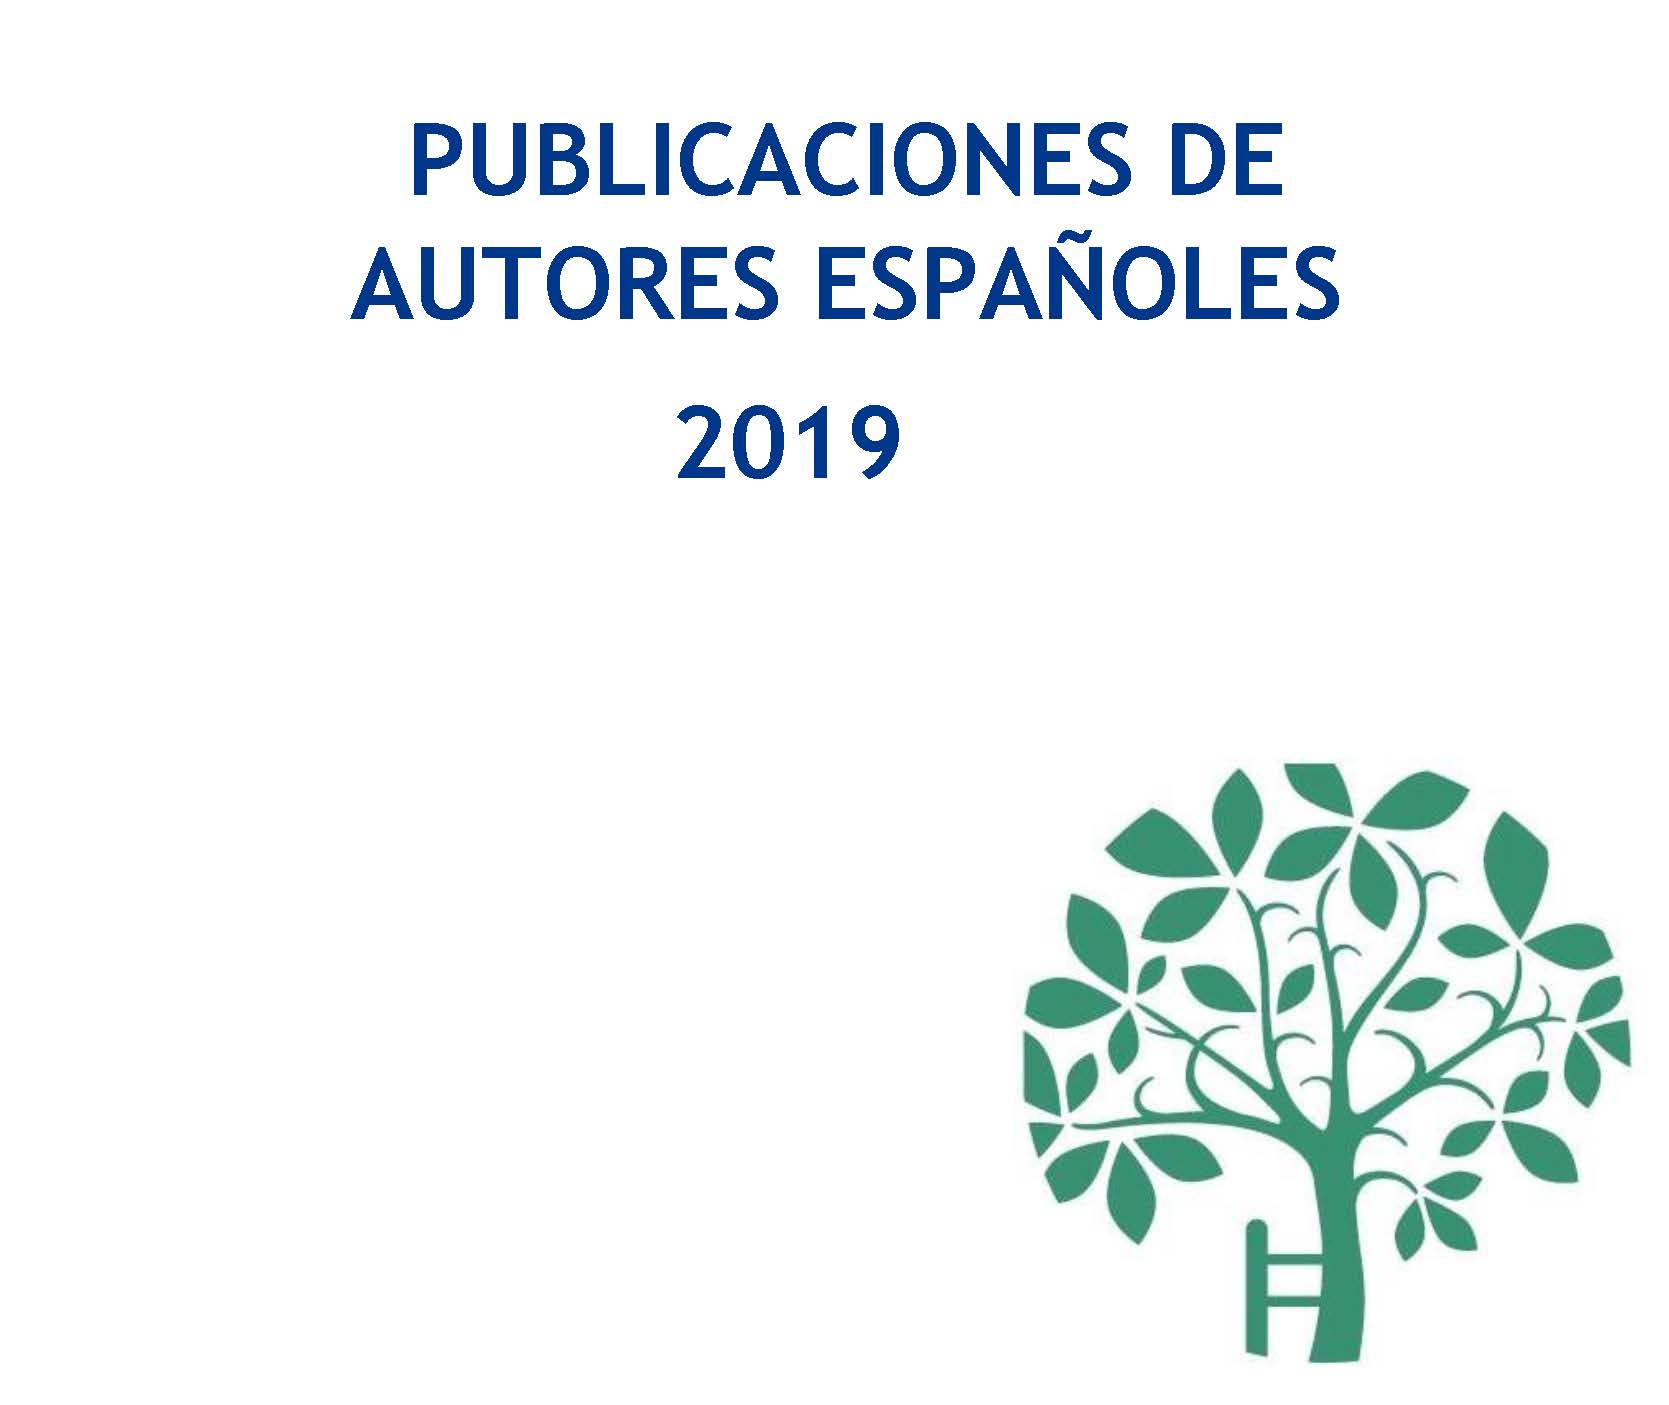 Publicaciones de autores españoles 2019